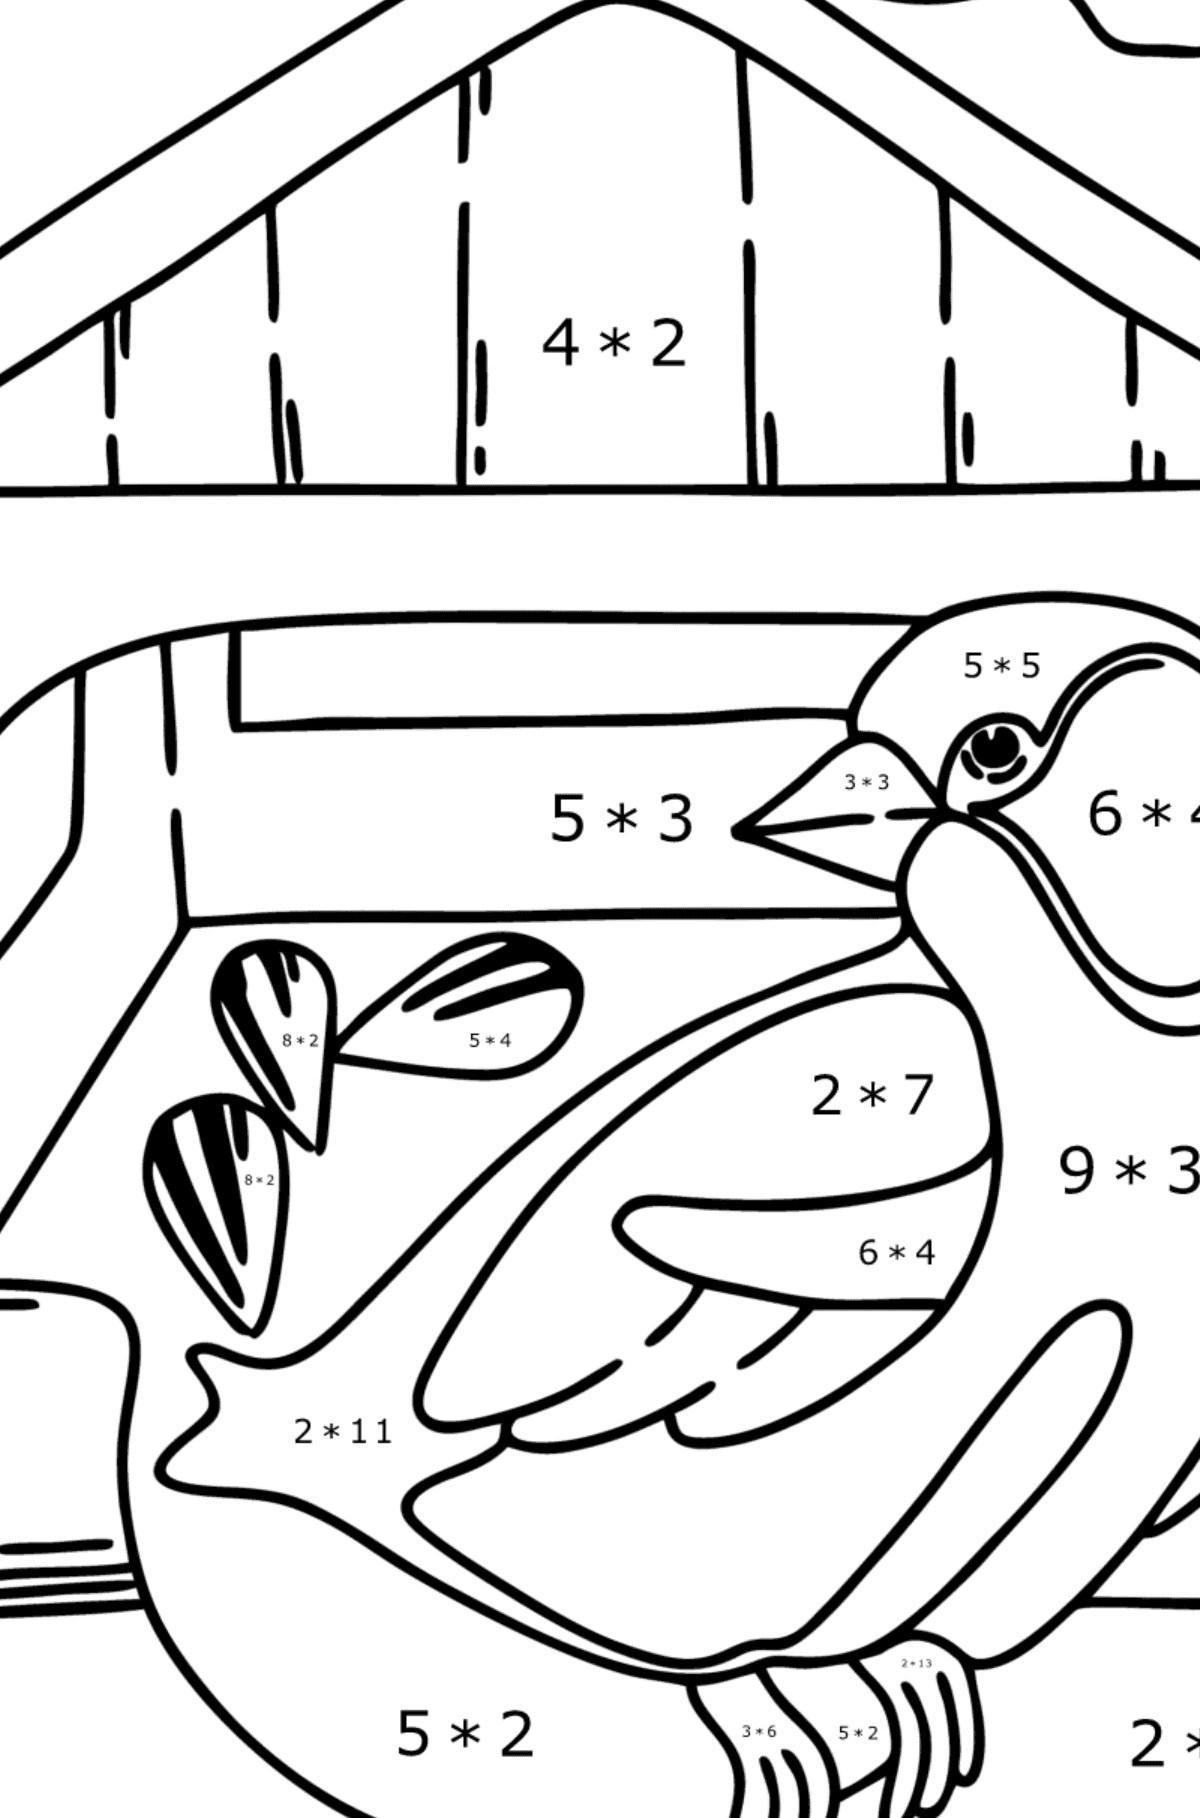 Desenho para colorir - alimentador de pássaros - Colorindo com Matemática - Multiplicação para Crianças